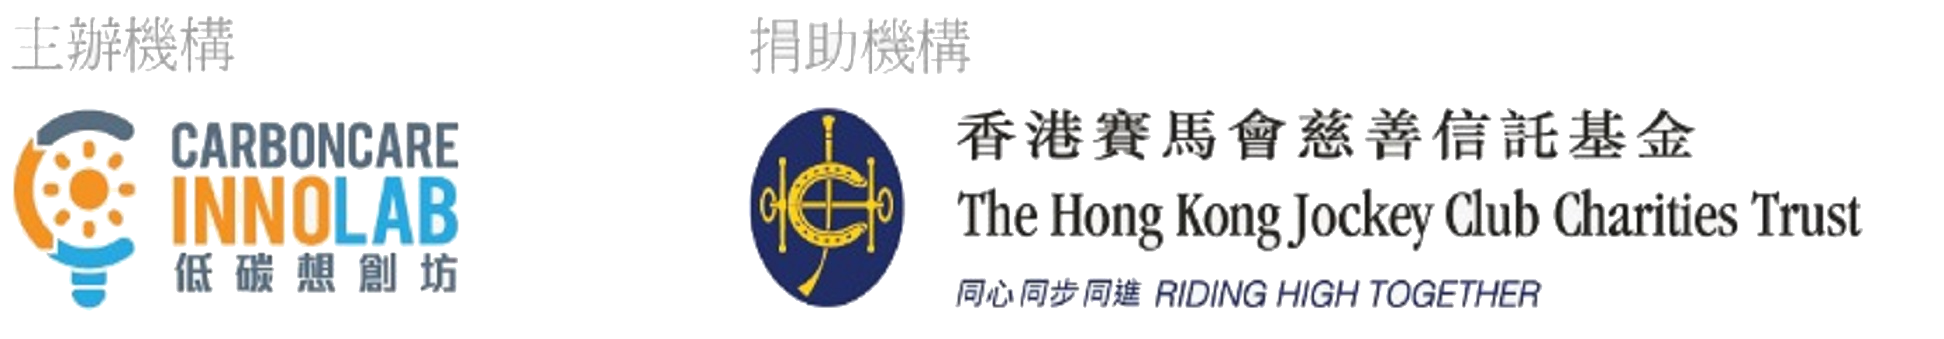 CCIL & HKJC Logo